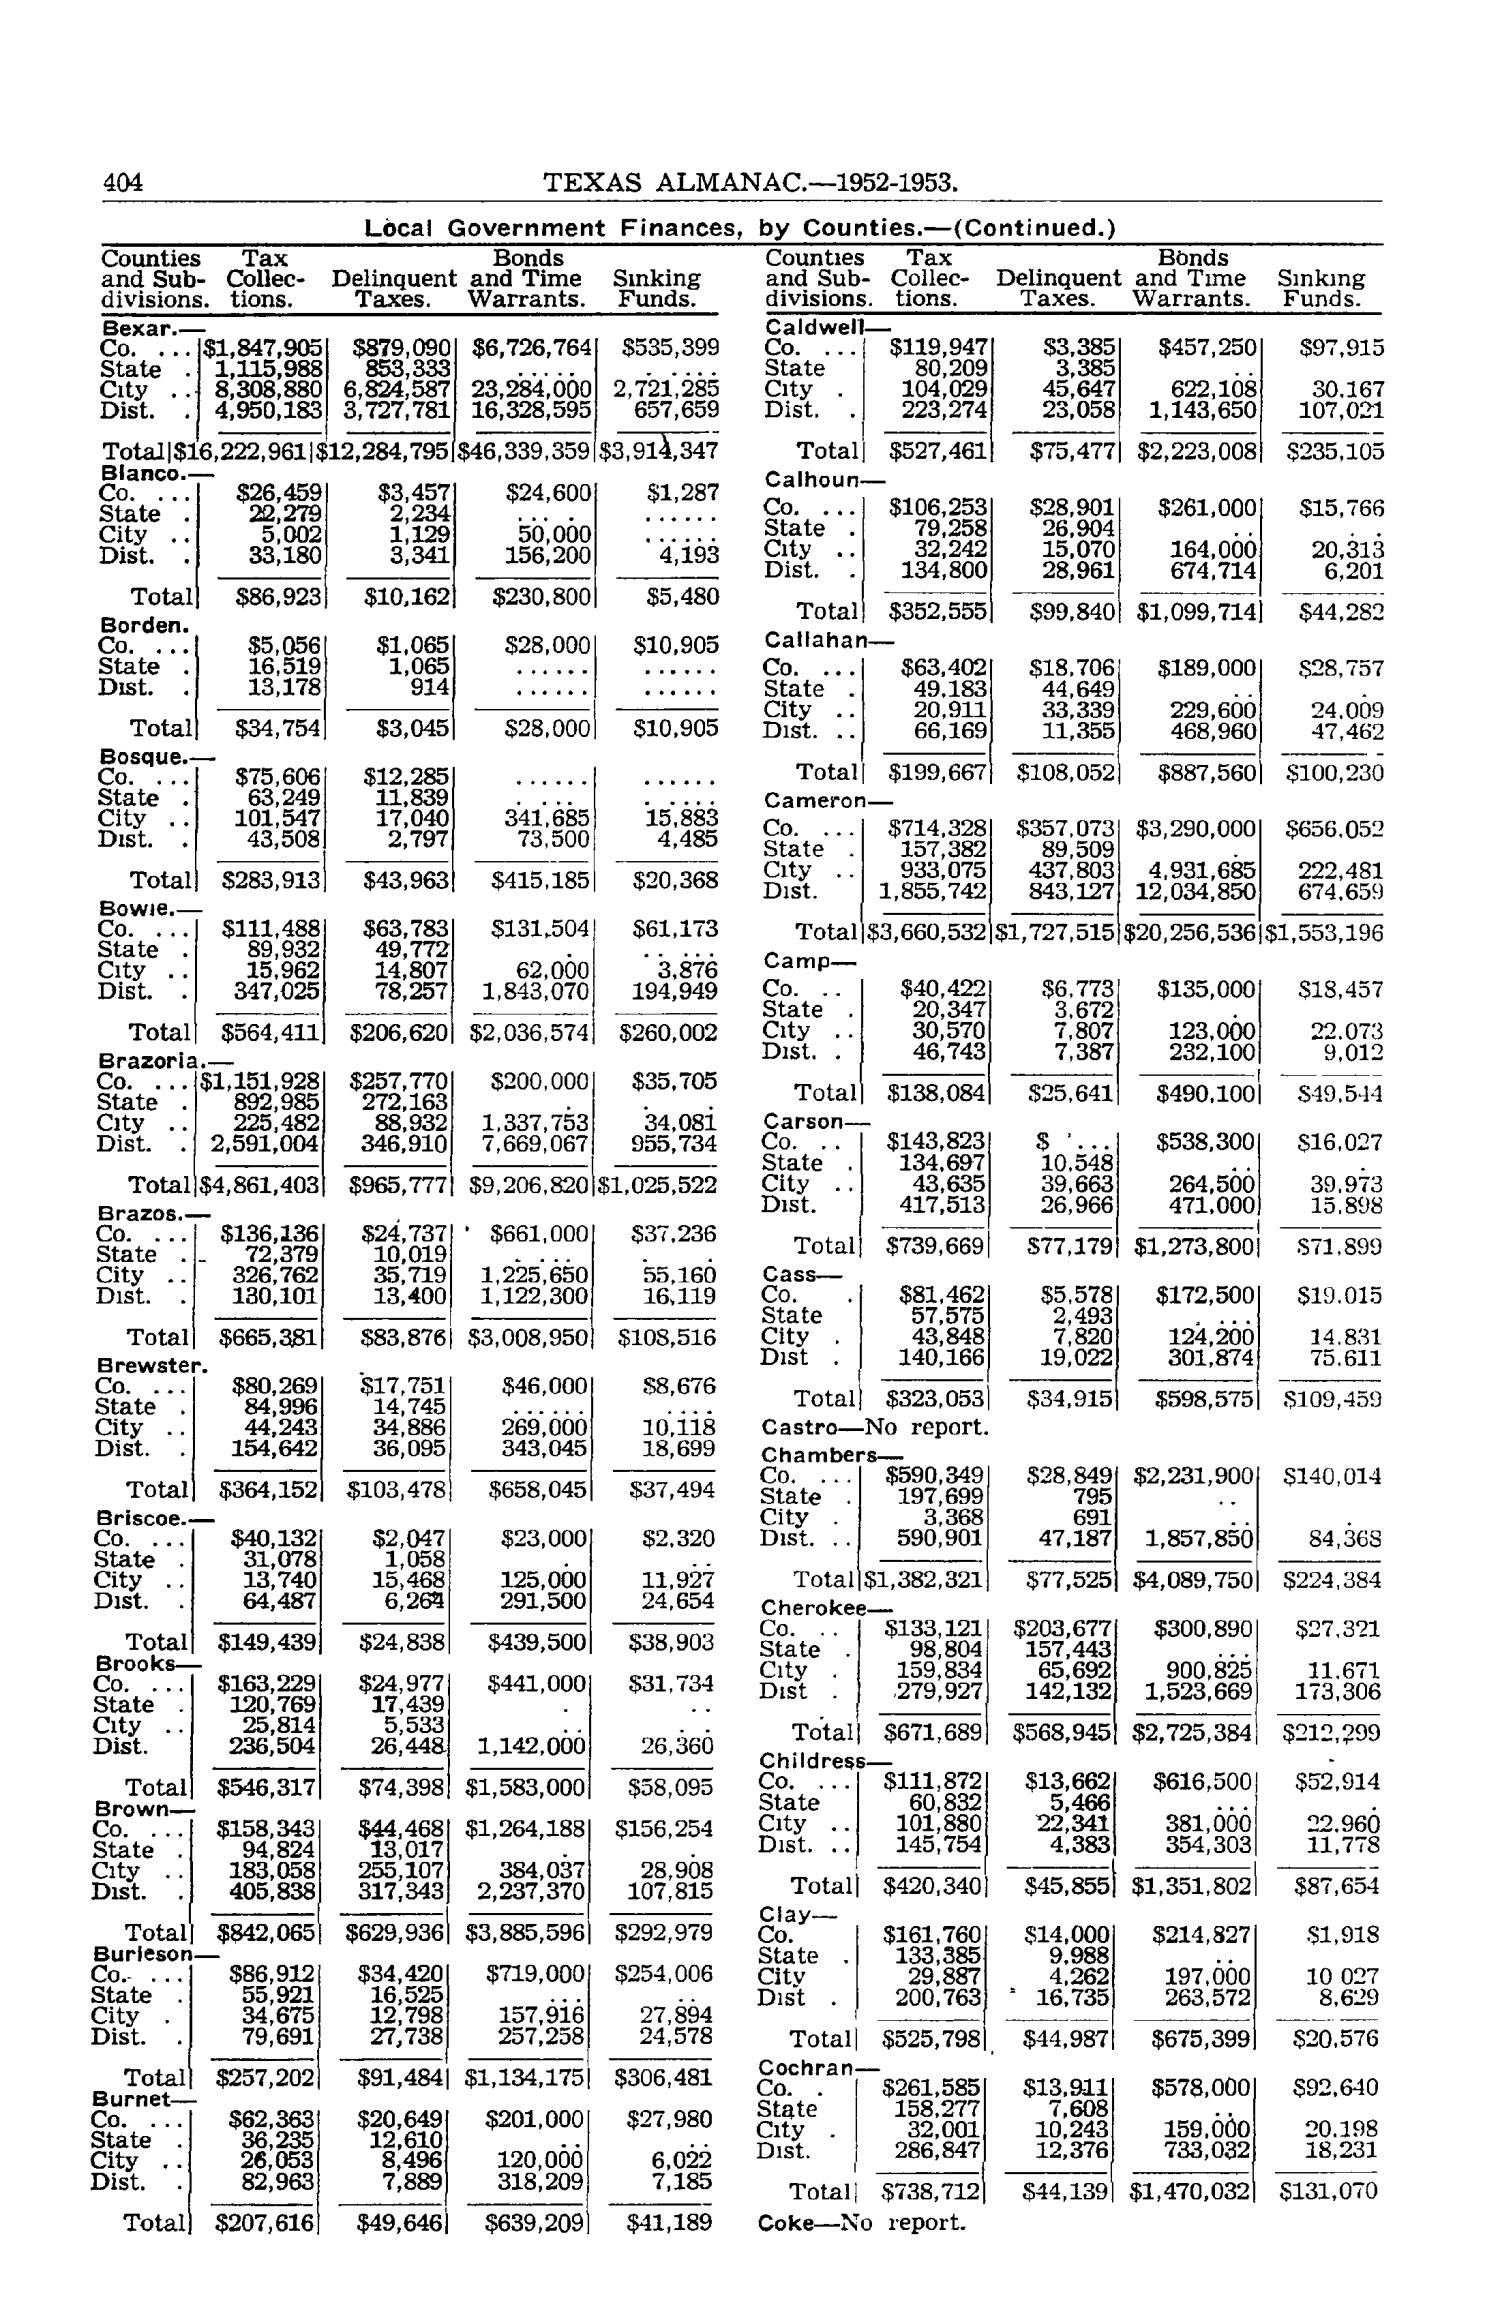 Texas Almanac, 1952-1953
                                                
                                                    404
                                                